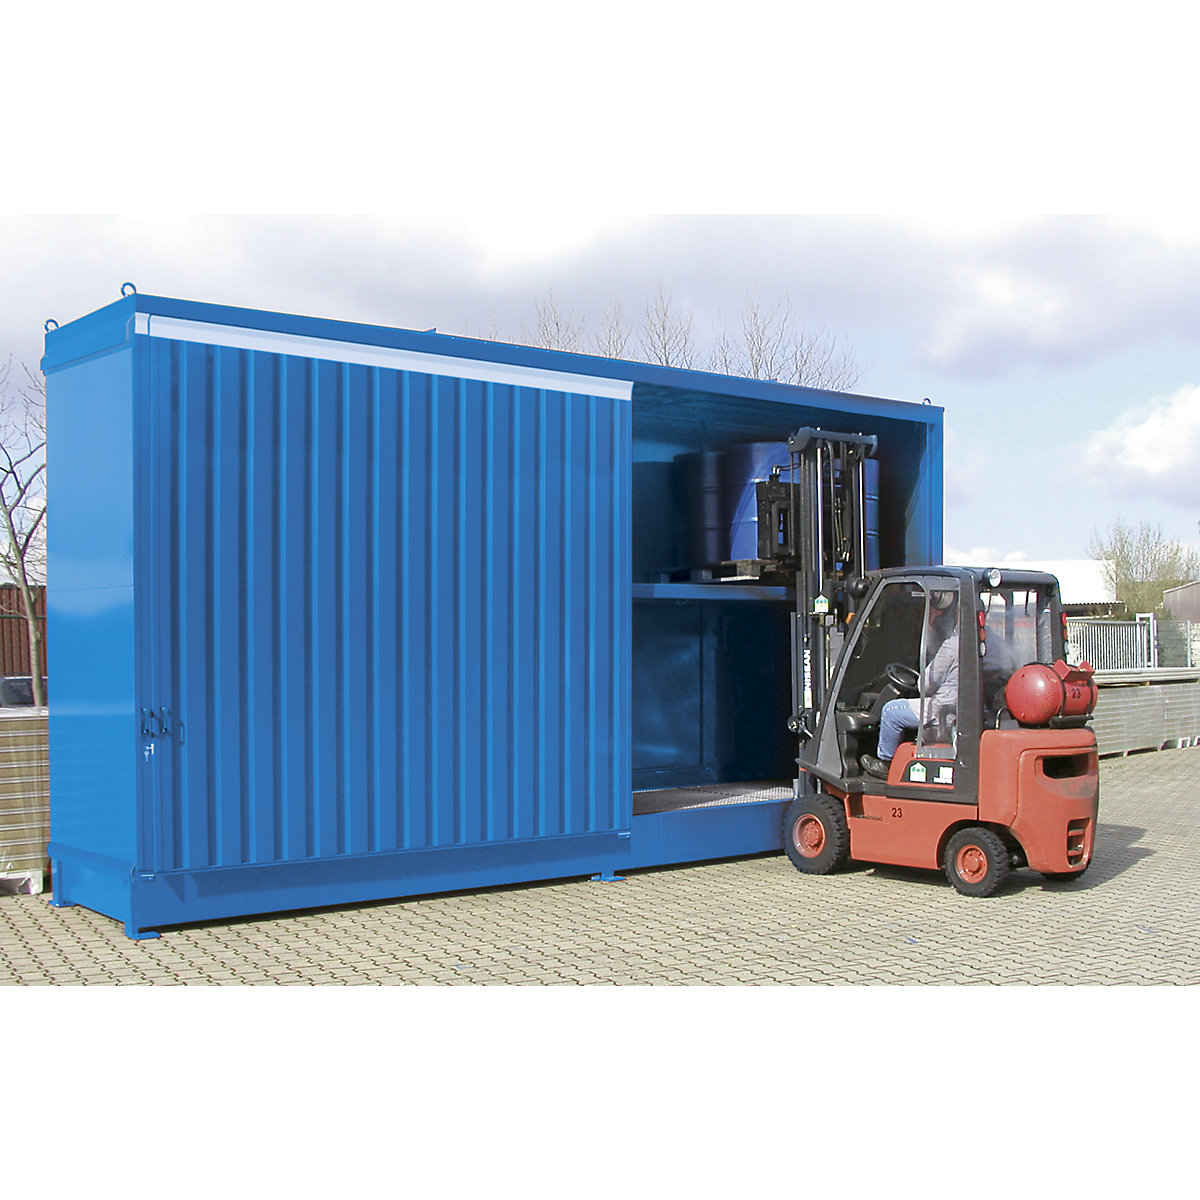 Stellingcontainer voor gevaarlijke stoffen – eurokraft pro, capaciteit 32 vaten van 200 l, blauw-2